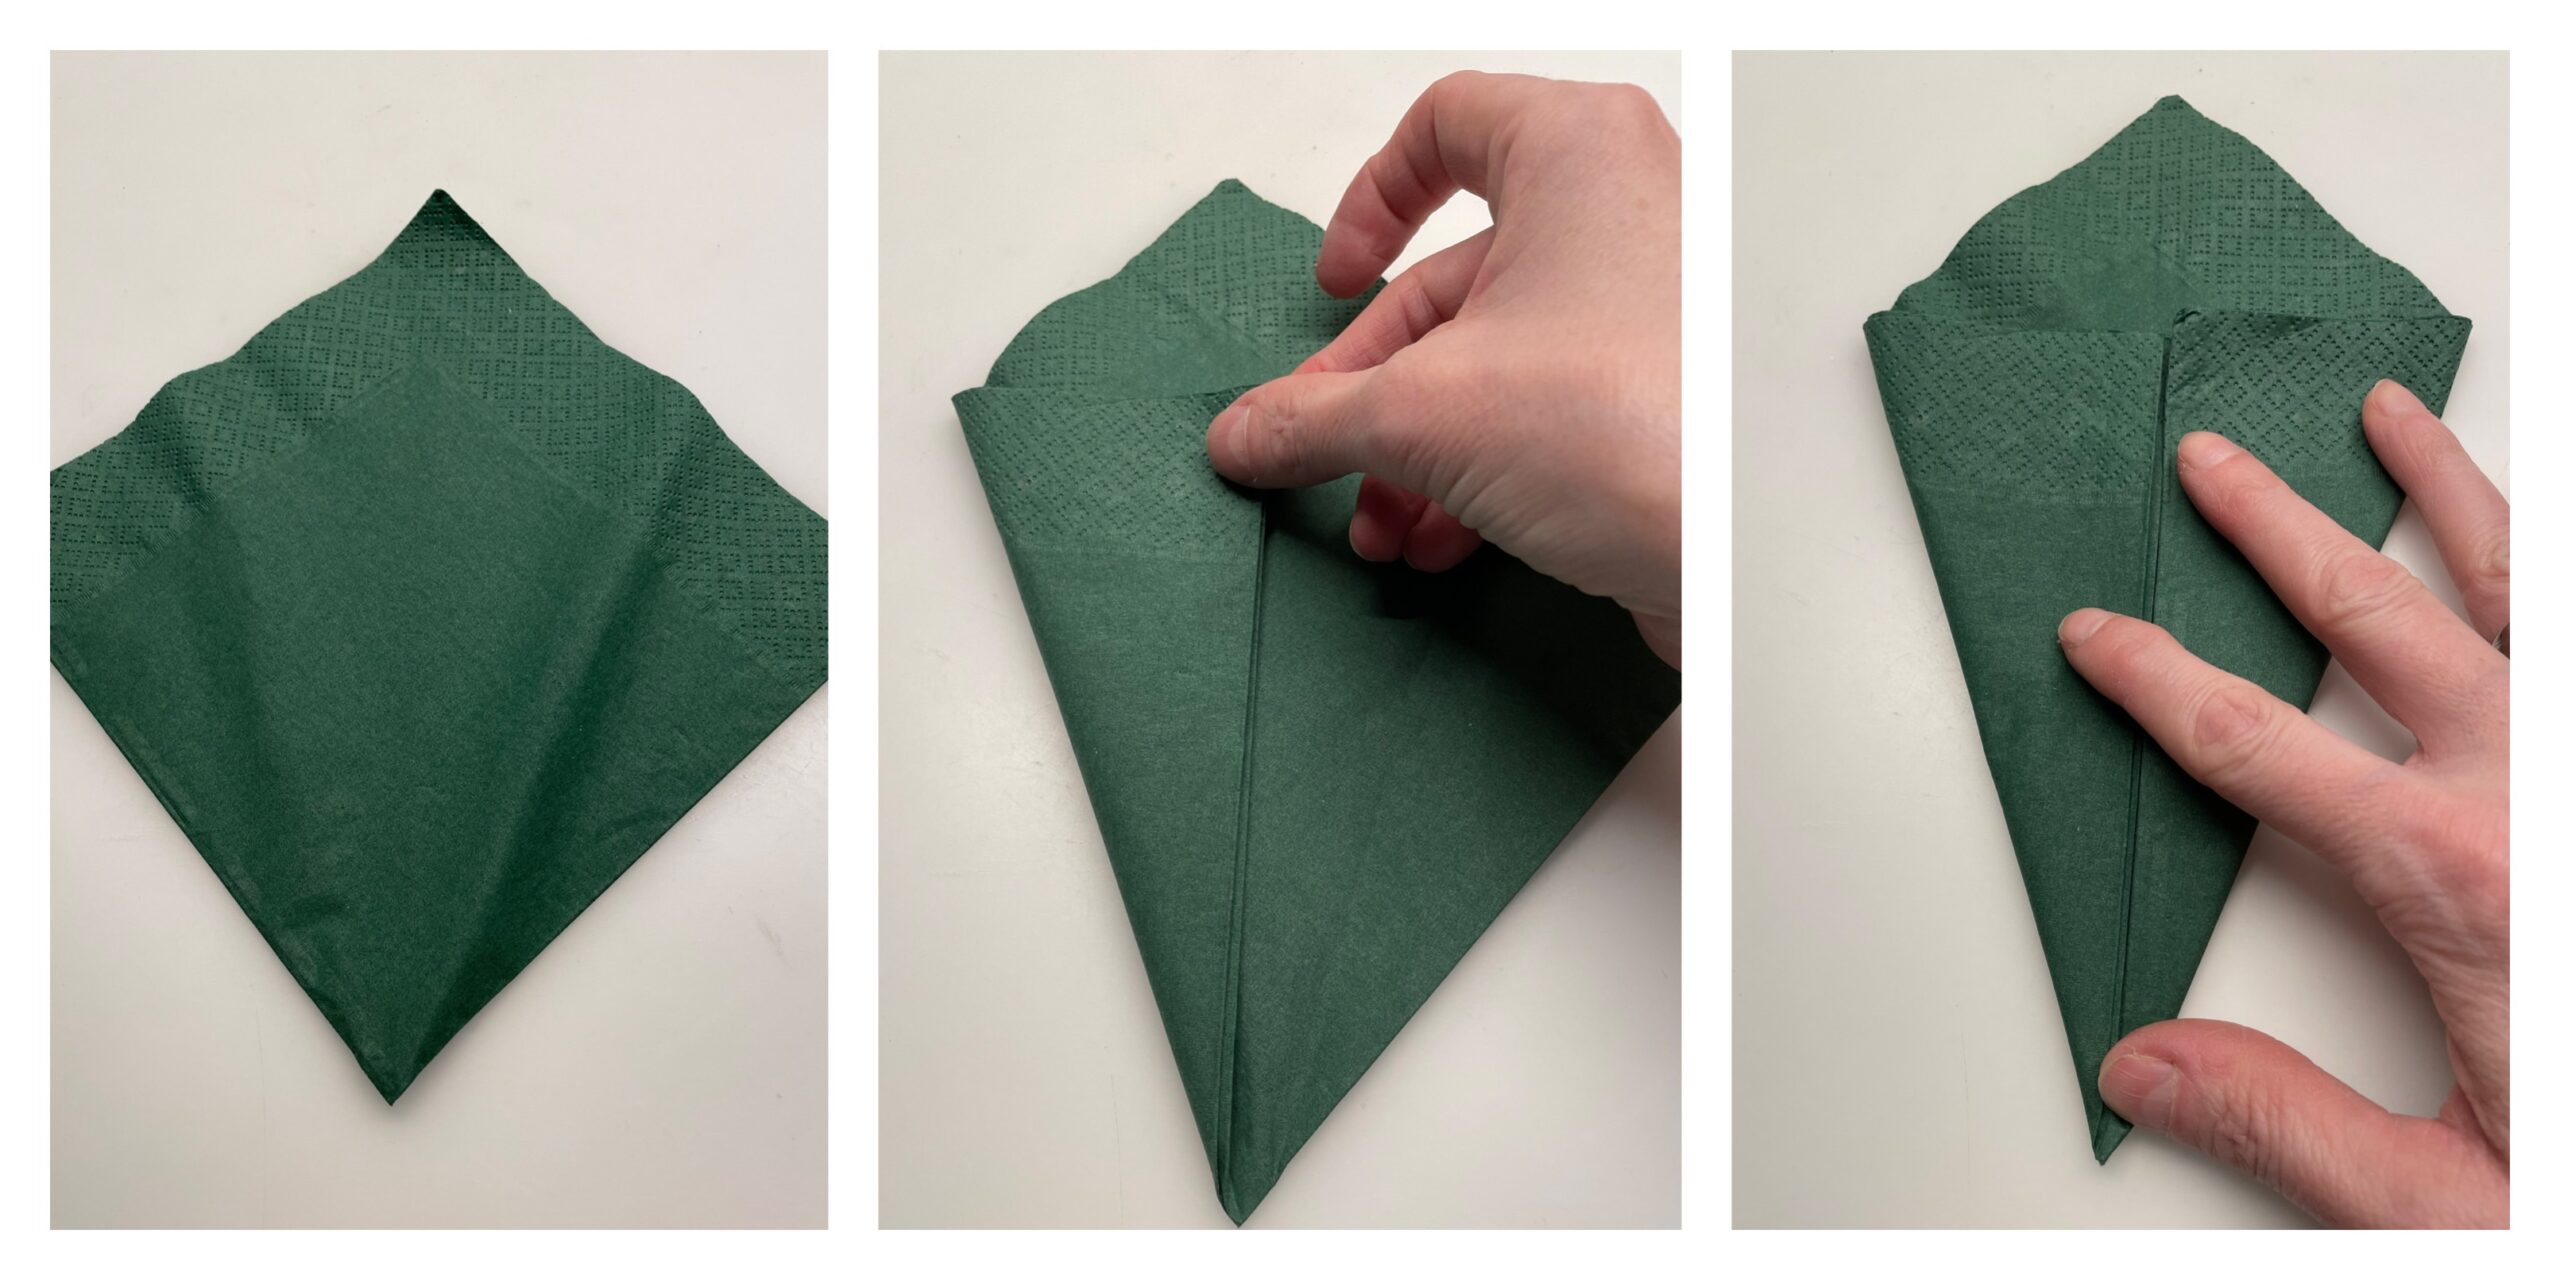 Bild zum Schritt 4 für das Bastel- und DIY-Abenteuer für Kinder: 'Jetzt faltet ihr eine dunkelgrüne Serviette zur Hälfte.Dann faltet ihr...'